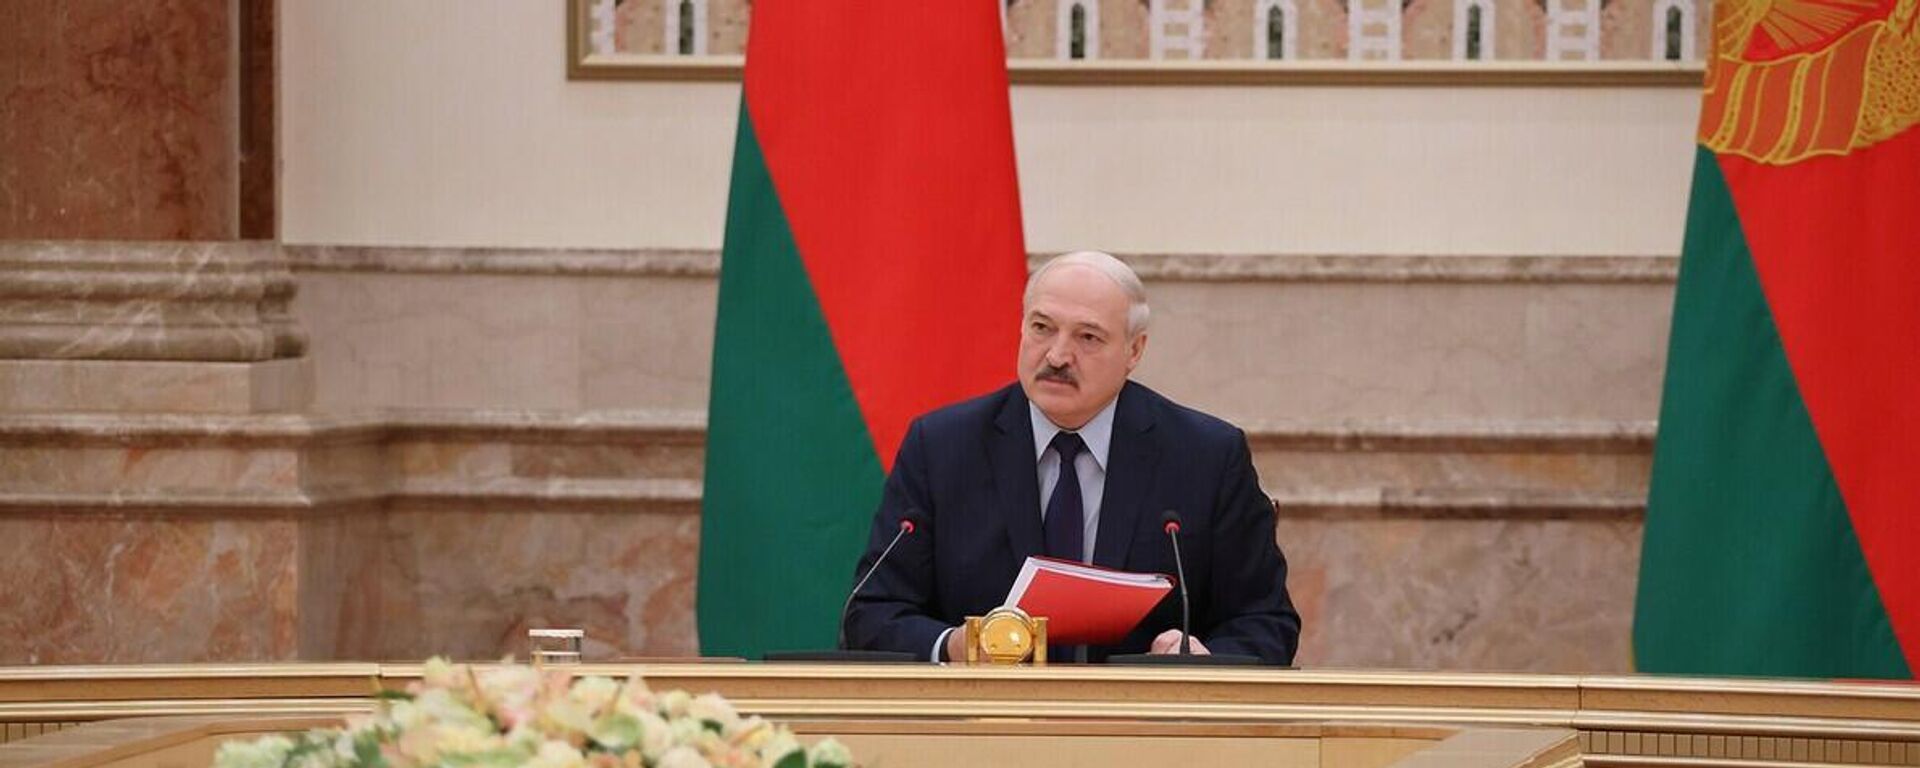 Лукашенко выступил за рассмотрение вопроса о смертной казни на референдуме  - Sputnik Беларусь, 1920, 28.09.2021